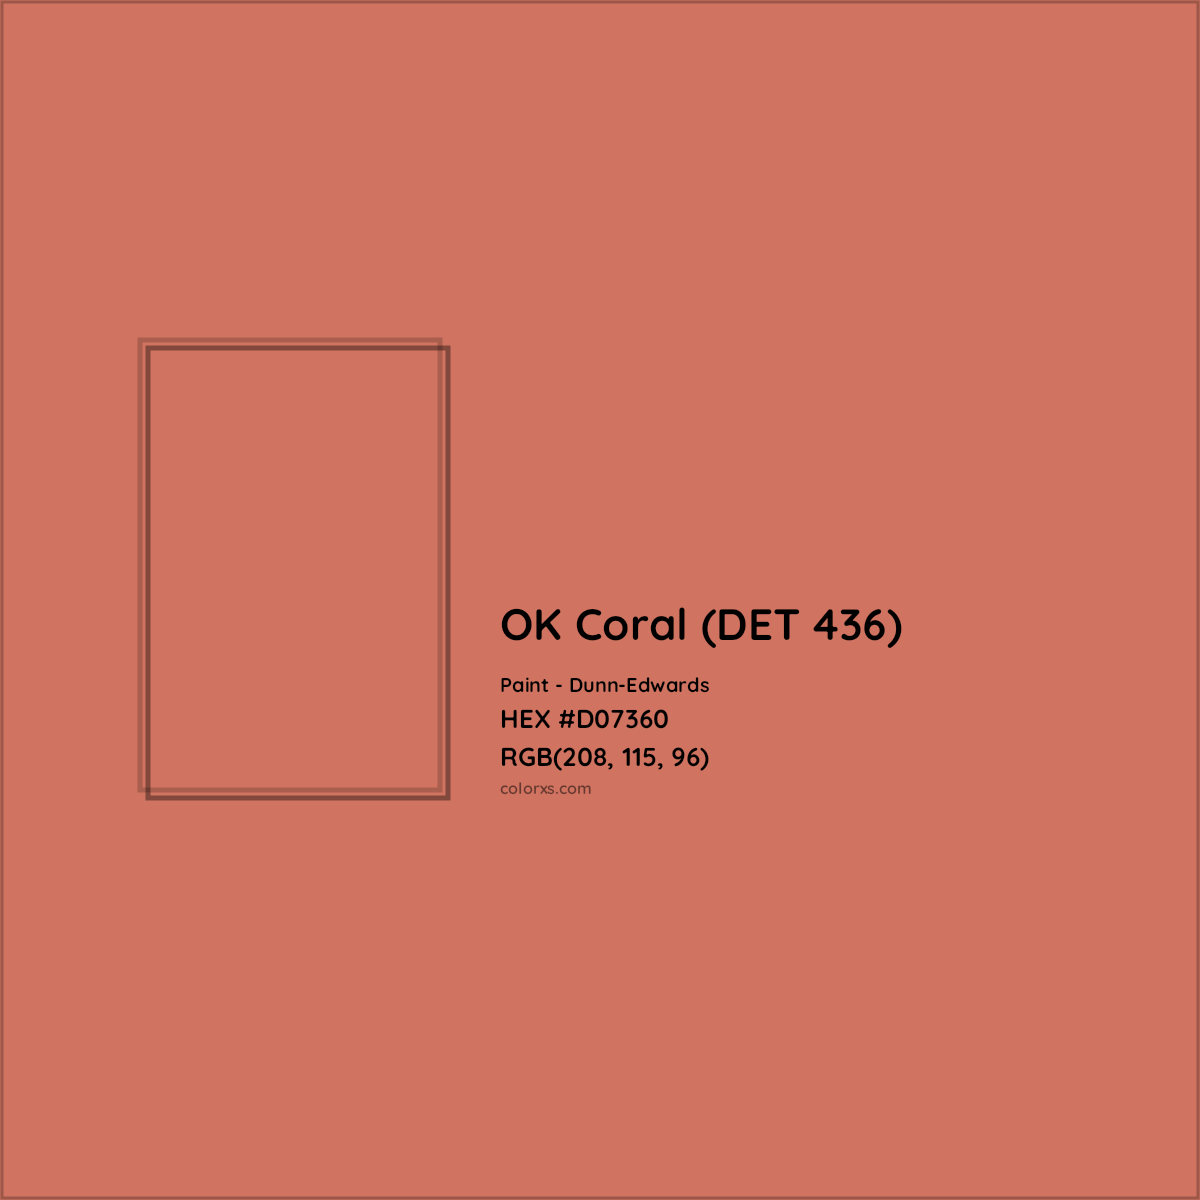 HEX #D07360 OK Coral (DET 436) Paint Dunn-Edwards - Color Code